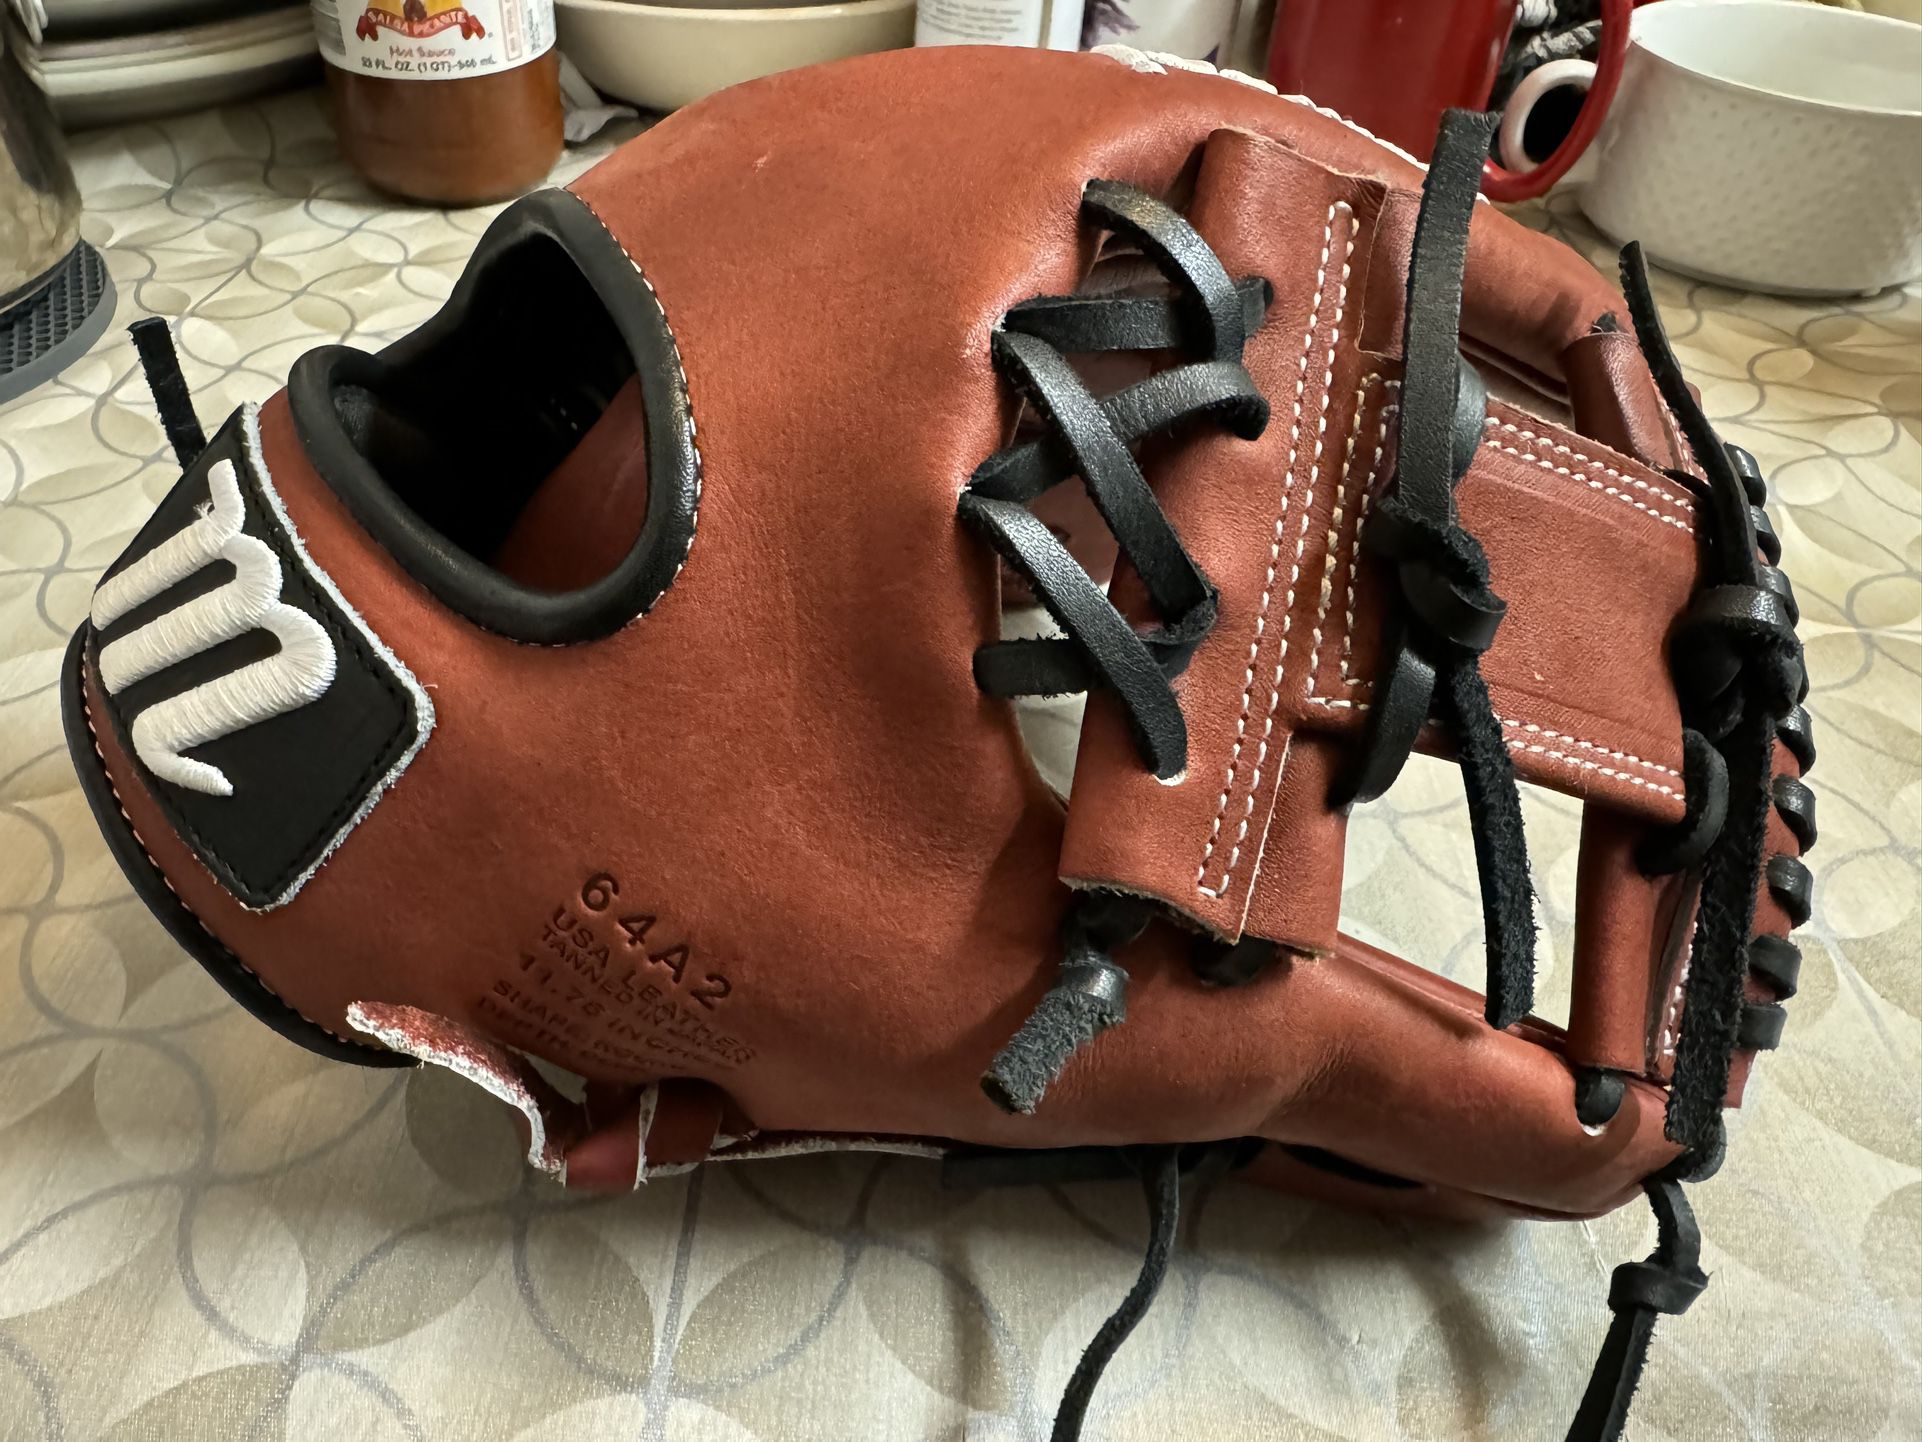 Marucci Baseball Glove